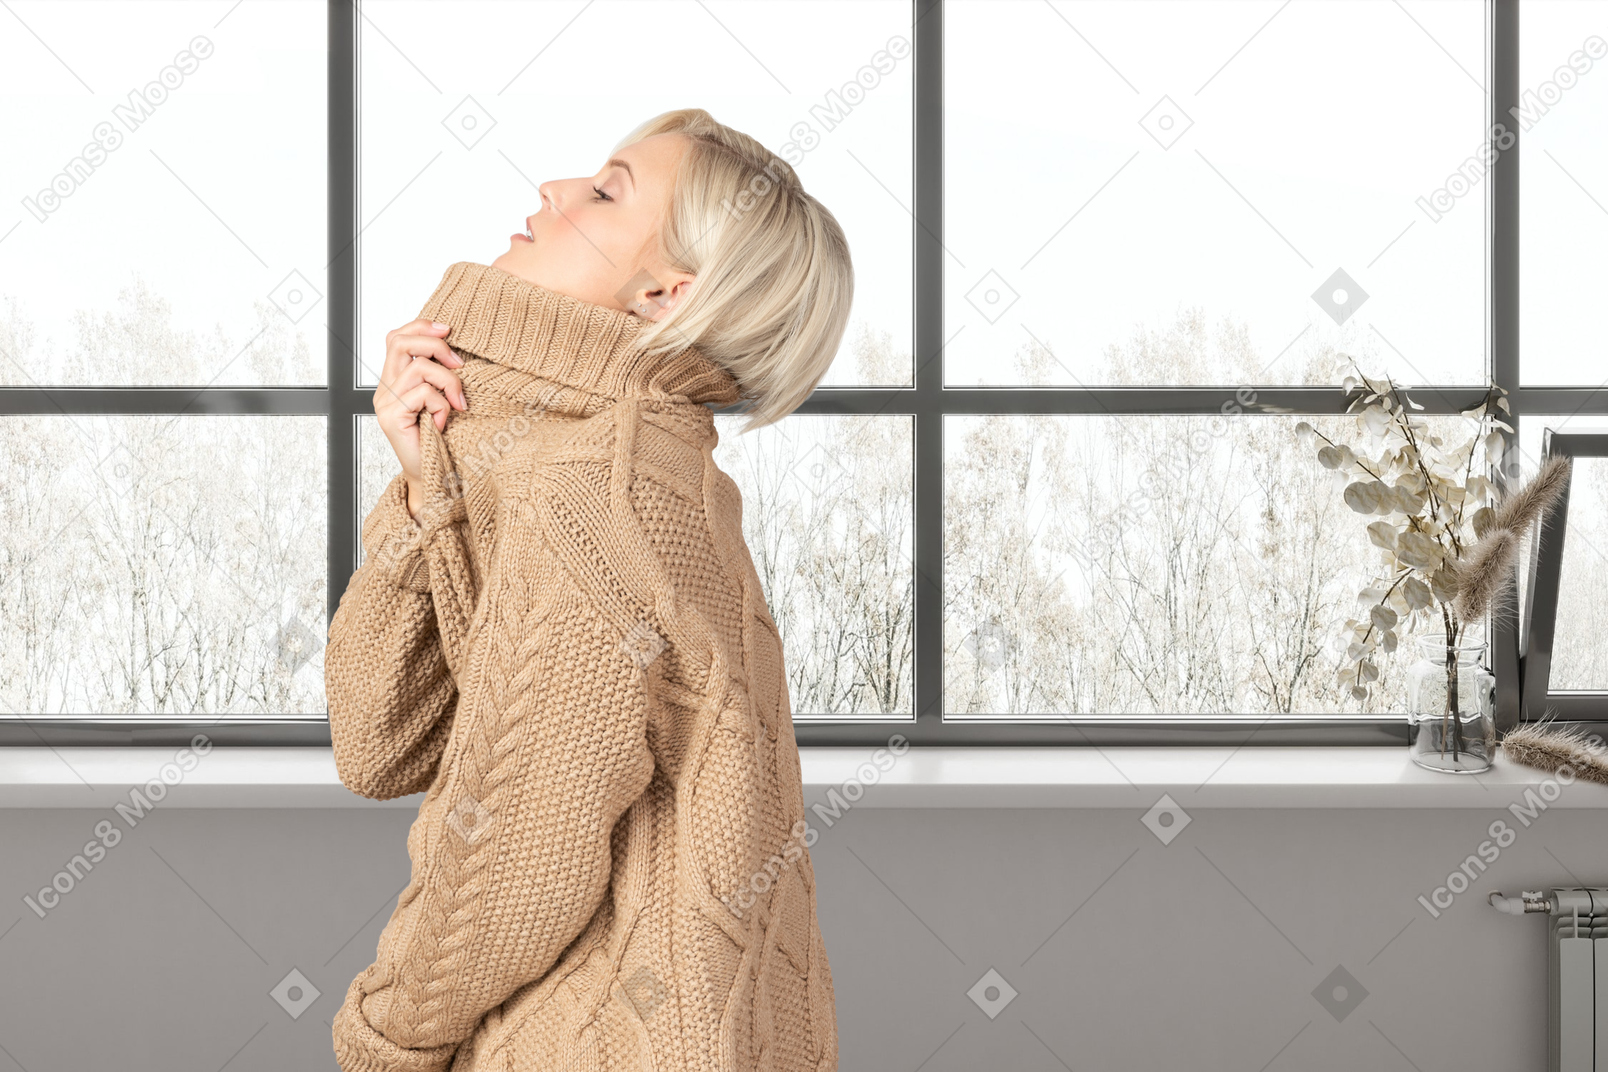 창문 근처에 서 있는 따뜻한 스웨터를 입은 여자